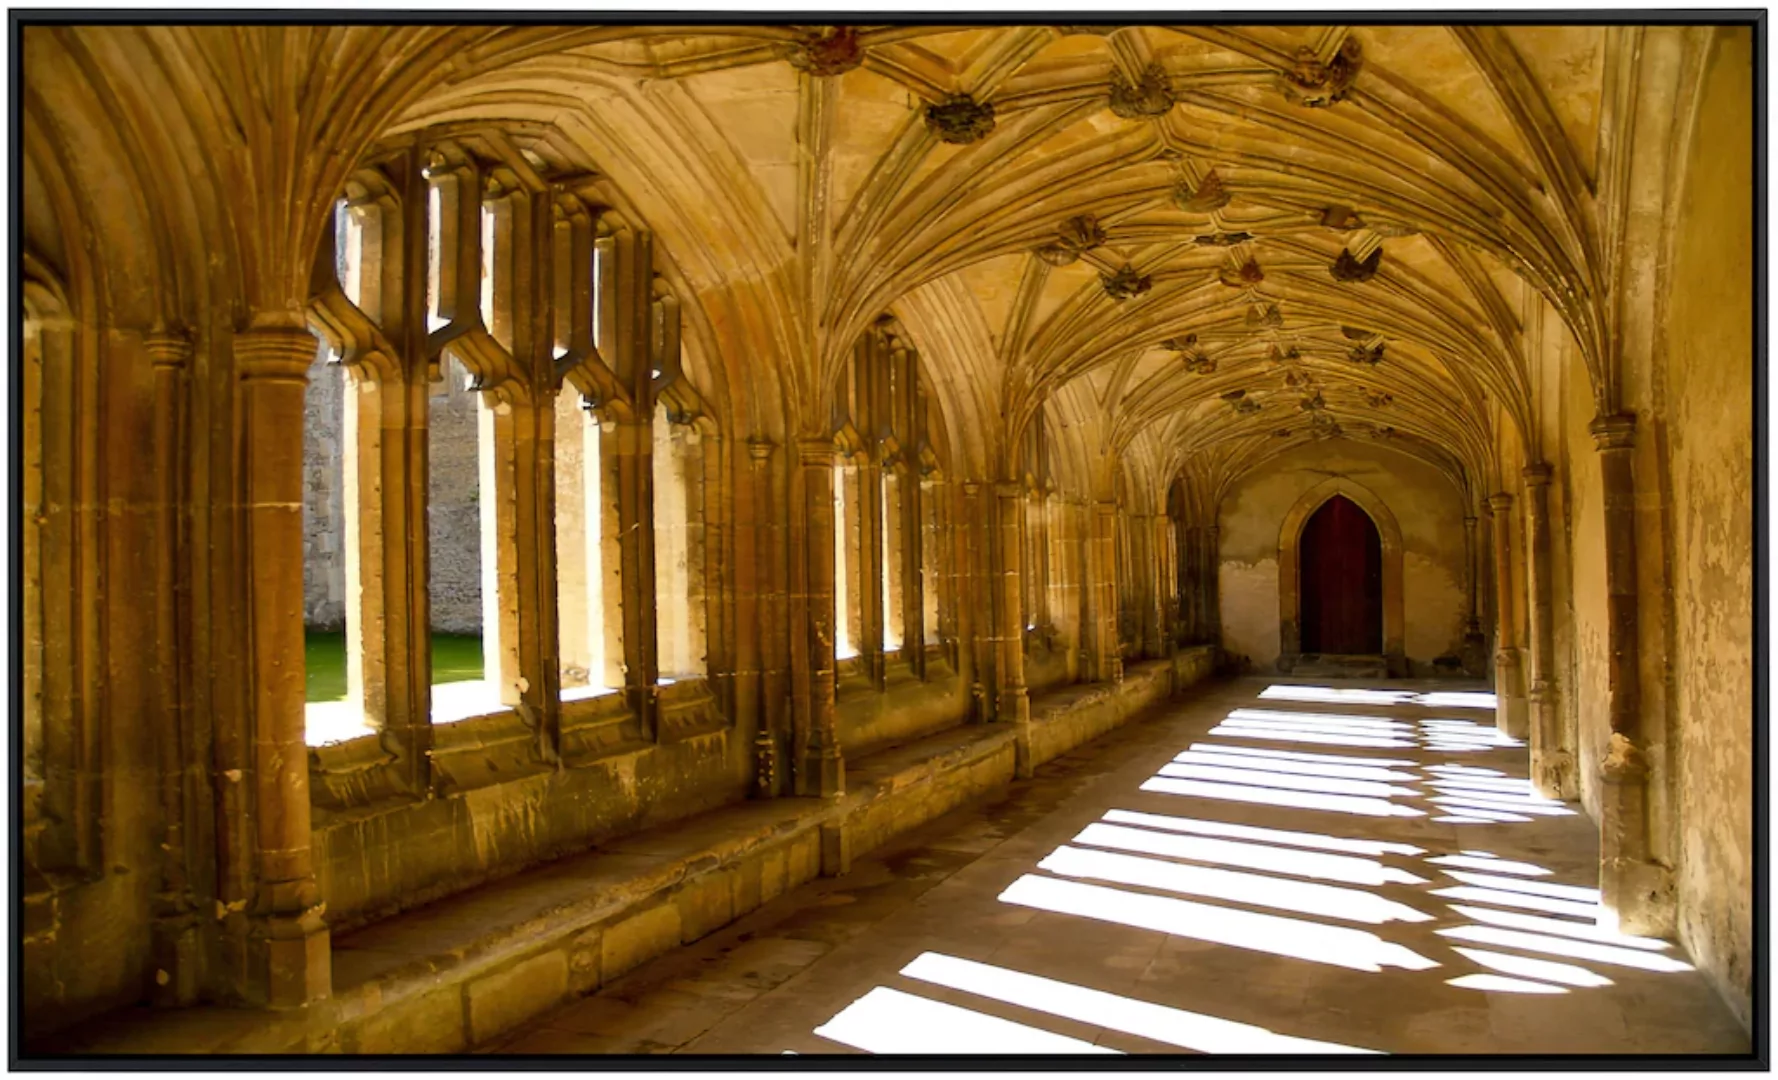 Papermoon Infrarotheizung »Sunlit Abbey«, sehr angenehme Strahlungswärme günstig online kaufen